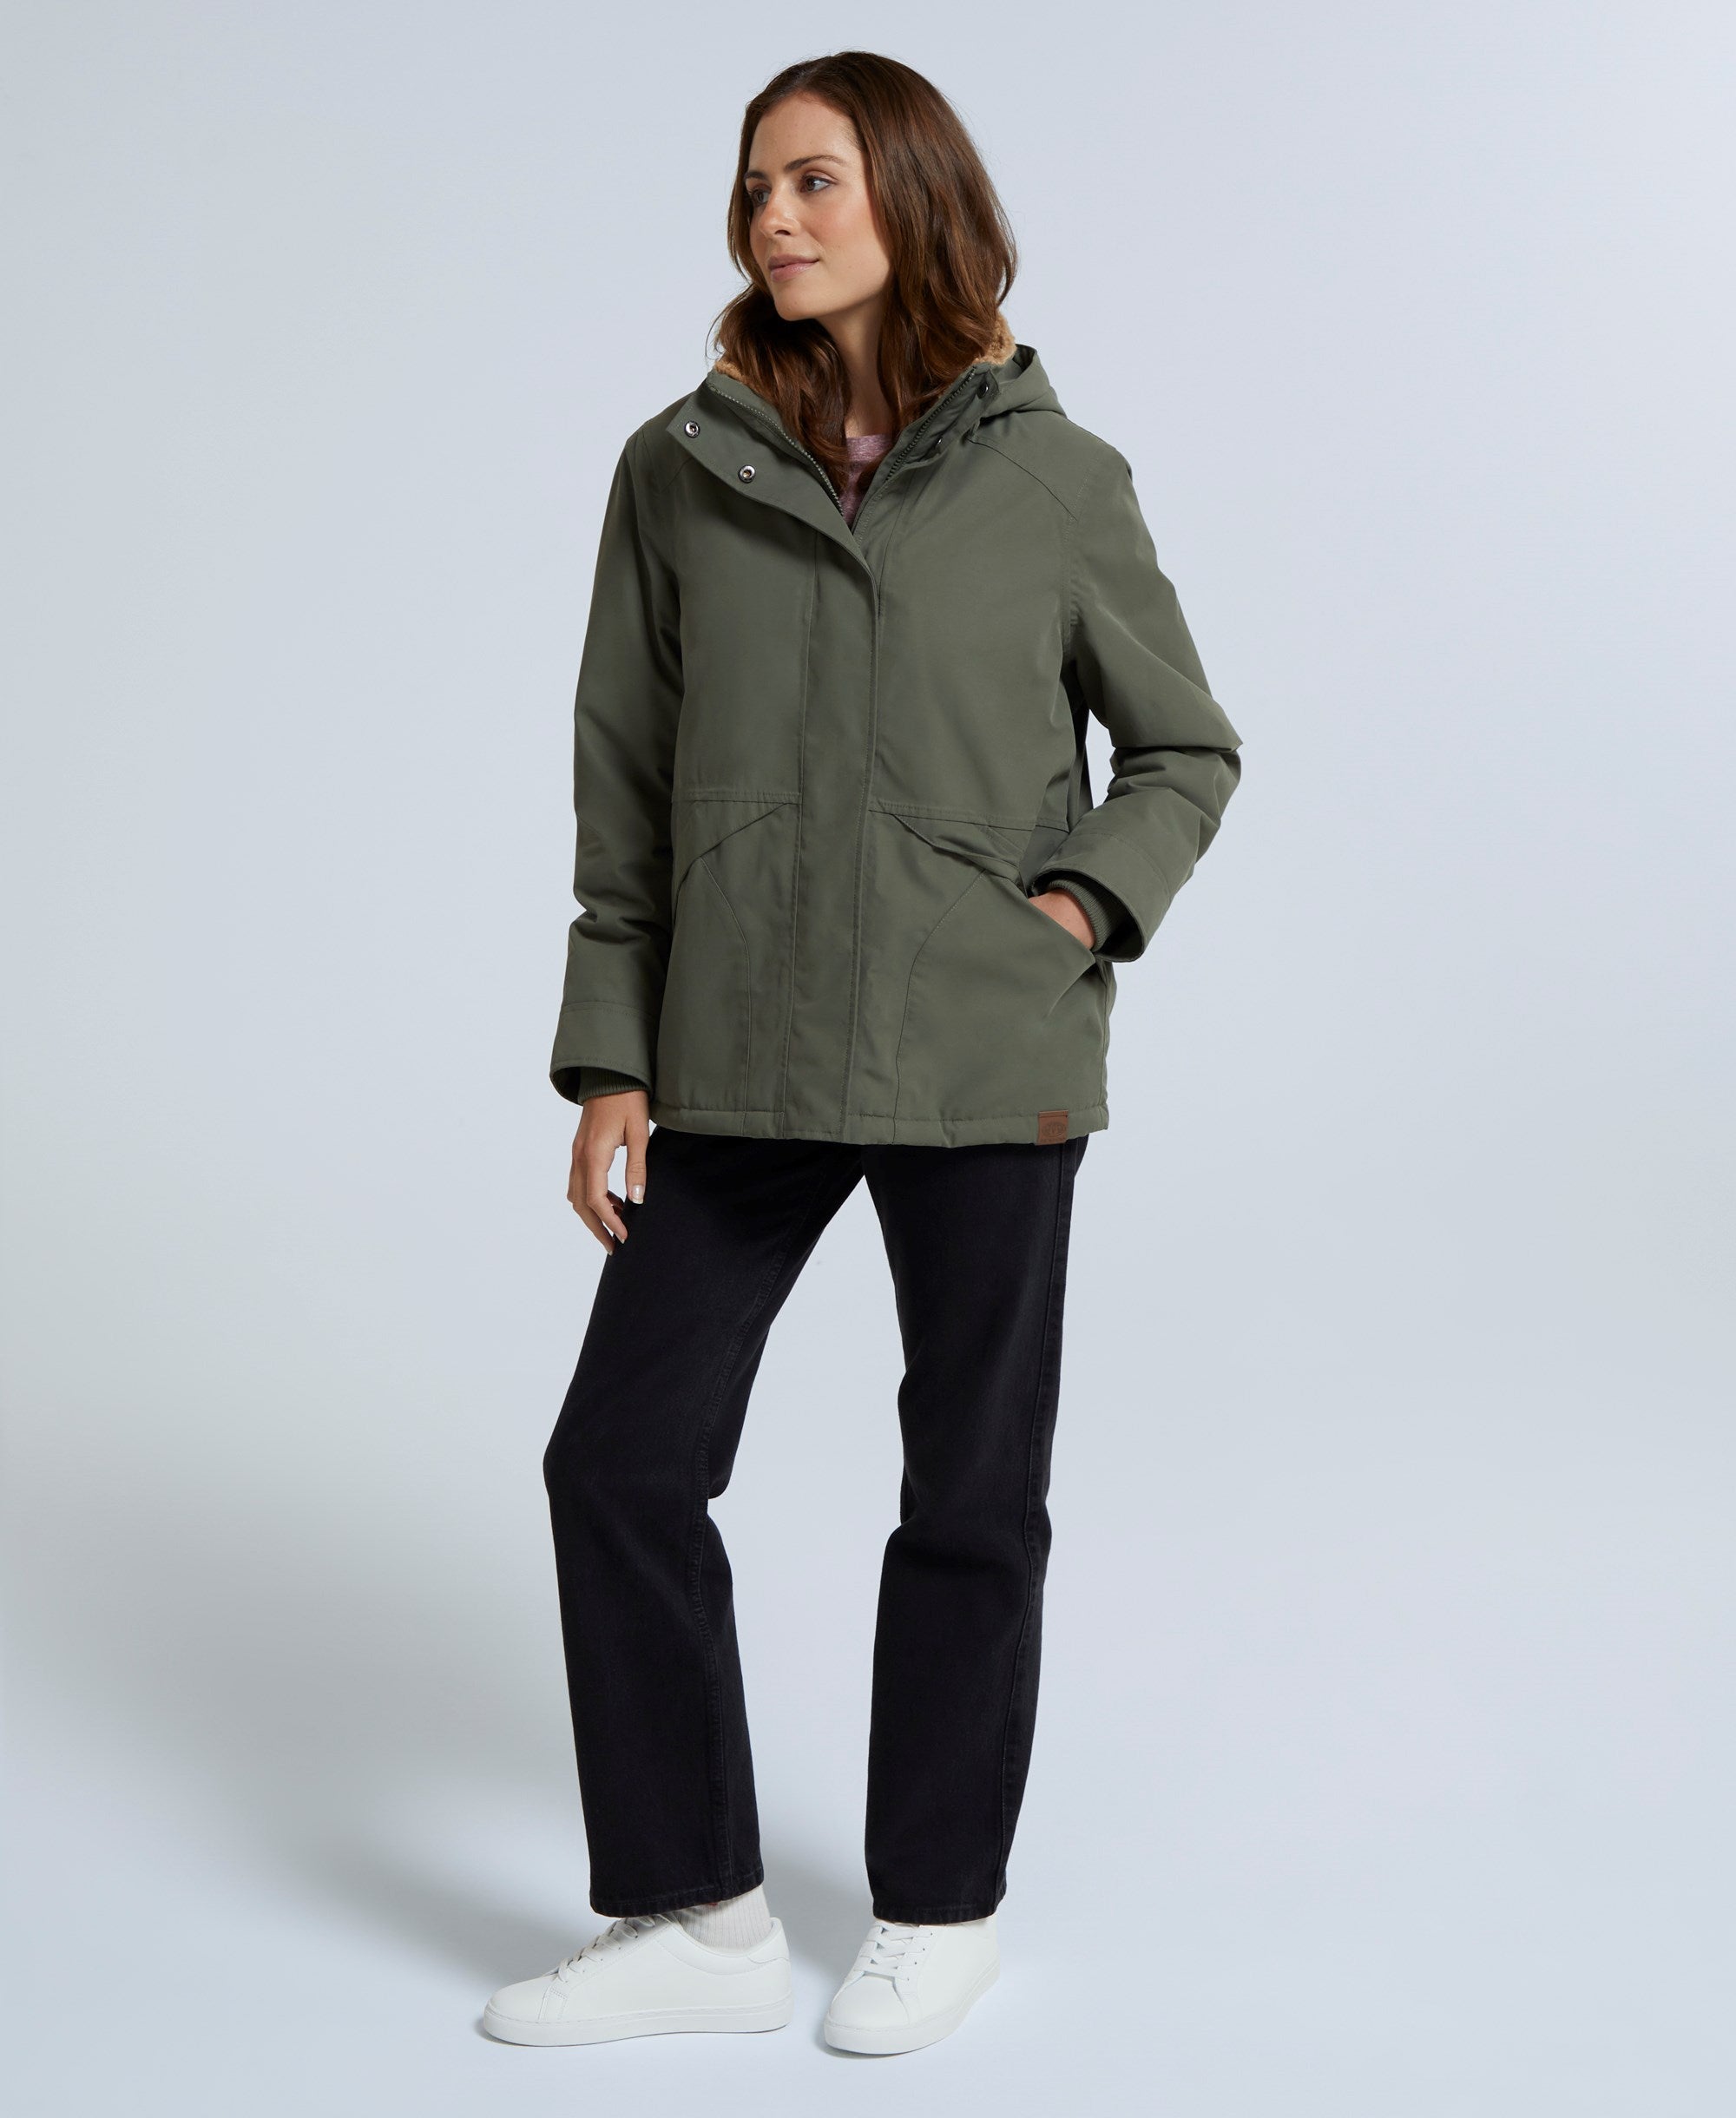 Tremayne Womens Borg Lined Waterproof Jacket - Khaki